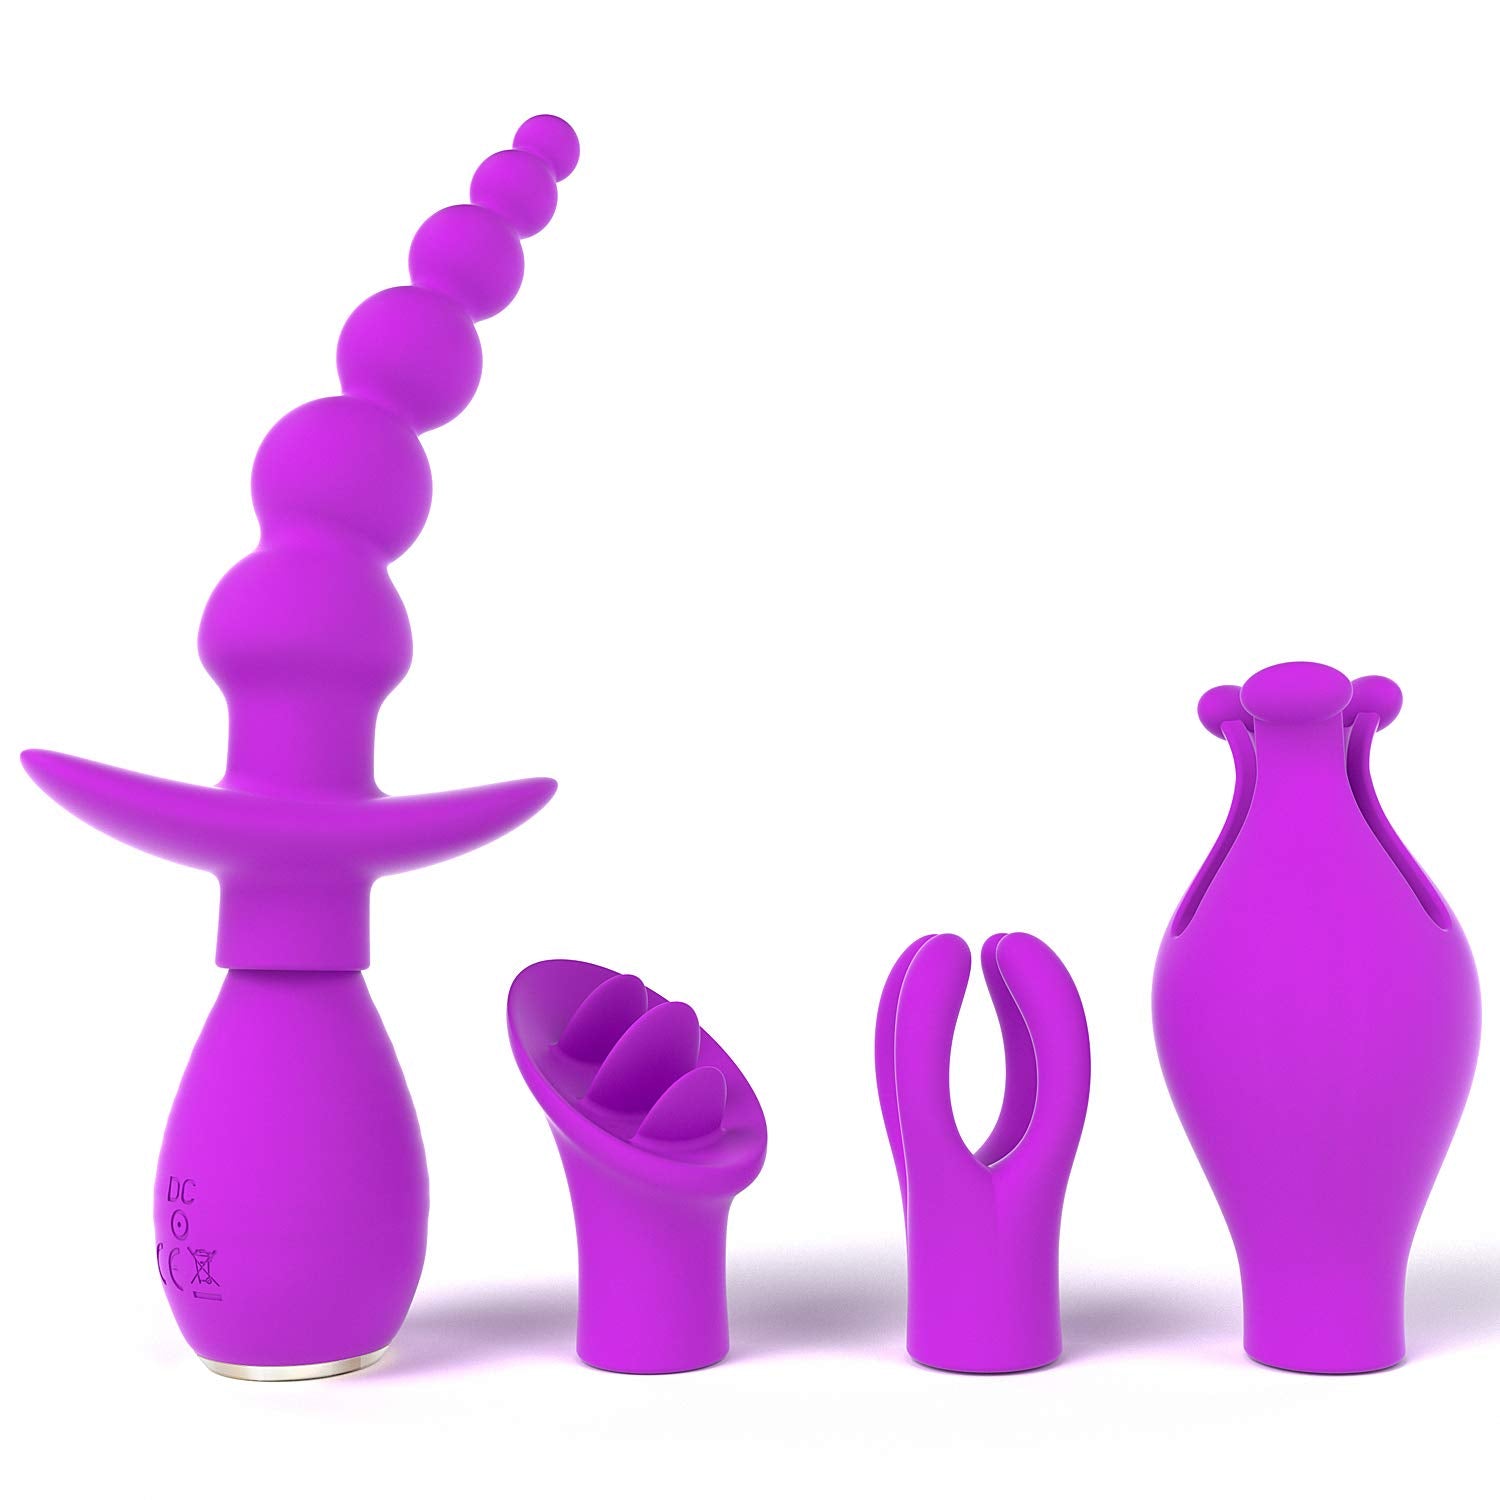 10 Vibrating Versatile Sex Toy Kits